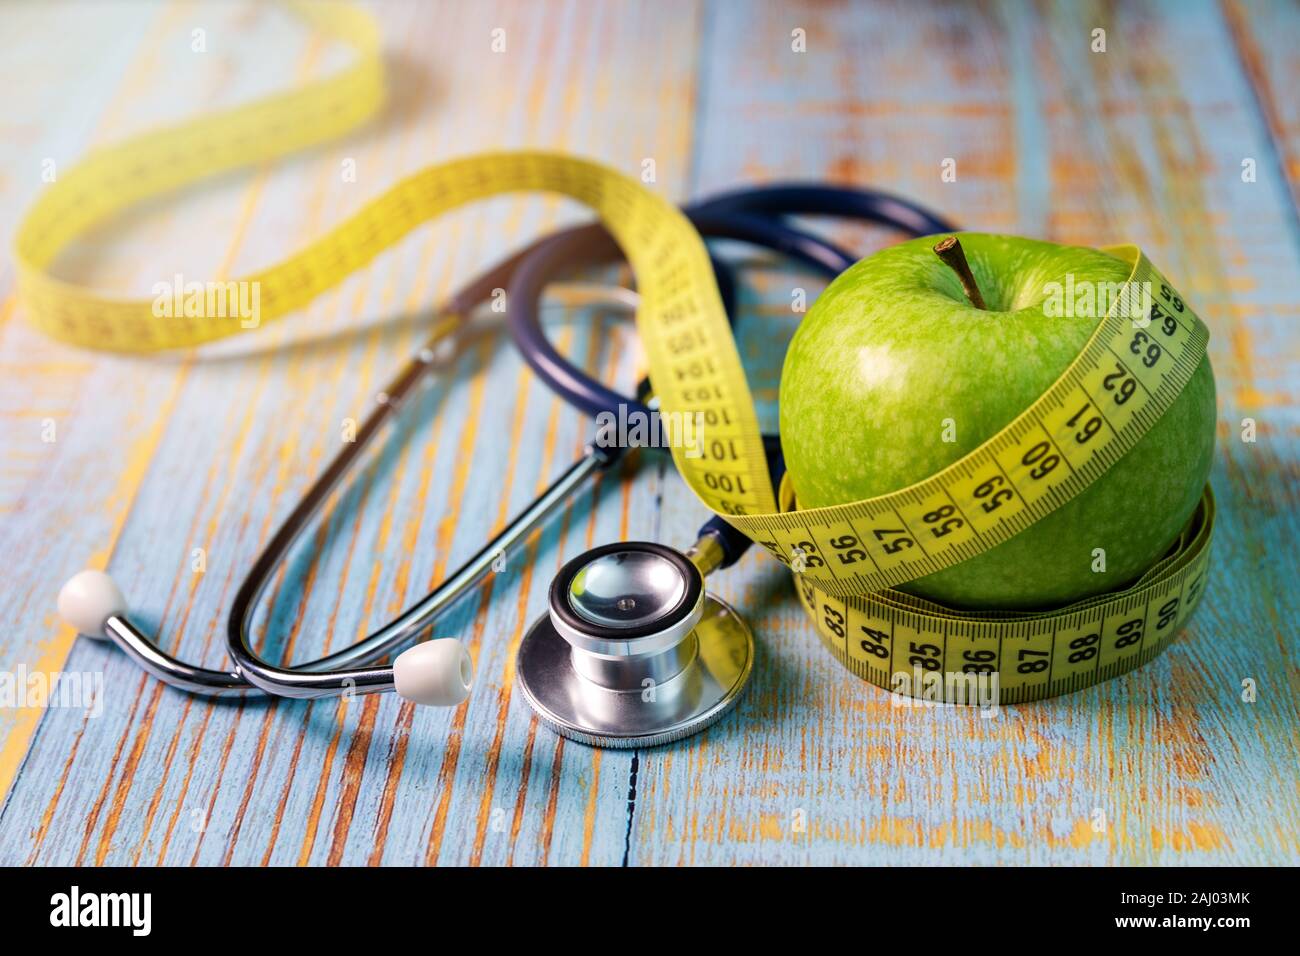 Gesunde Lebensweise und Ernährung Konzept - Apple mit Messung Klebeband und Stethoskop auf dem blauen Holztisch Stockfoto